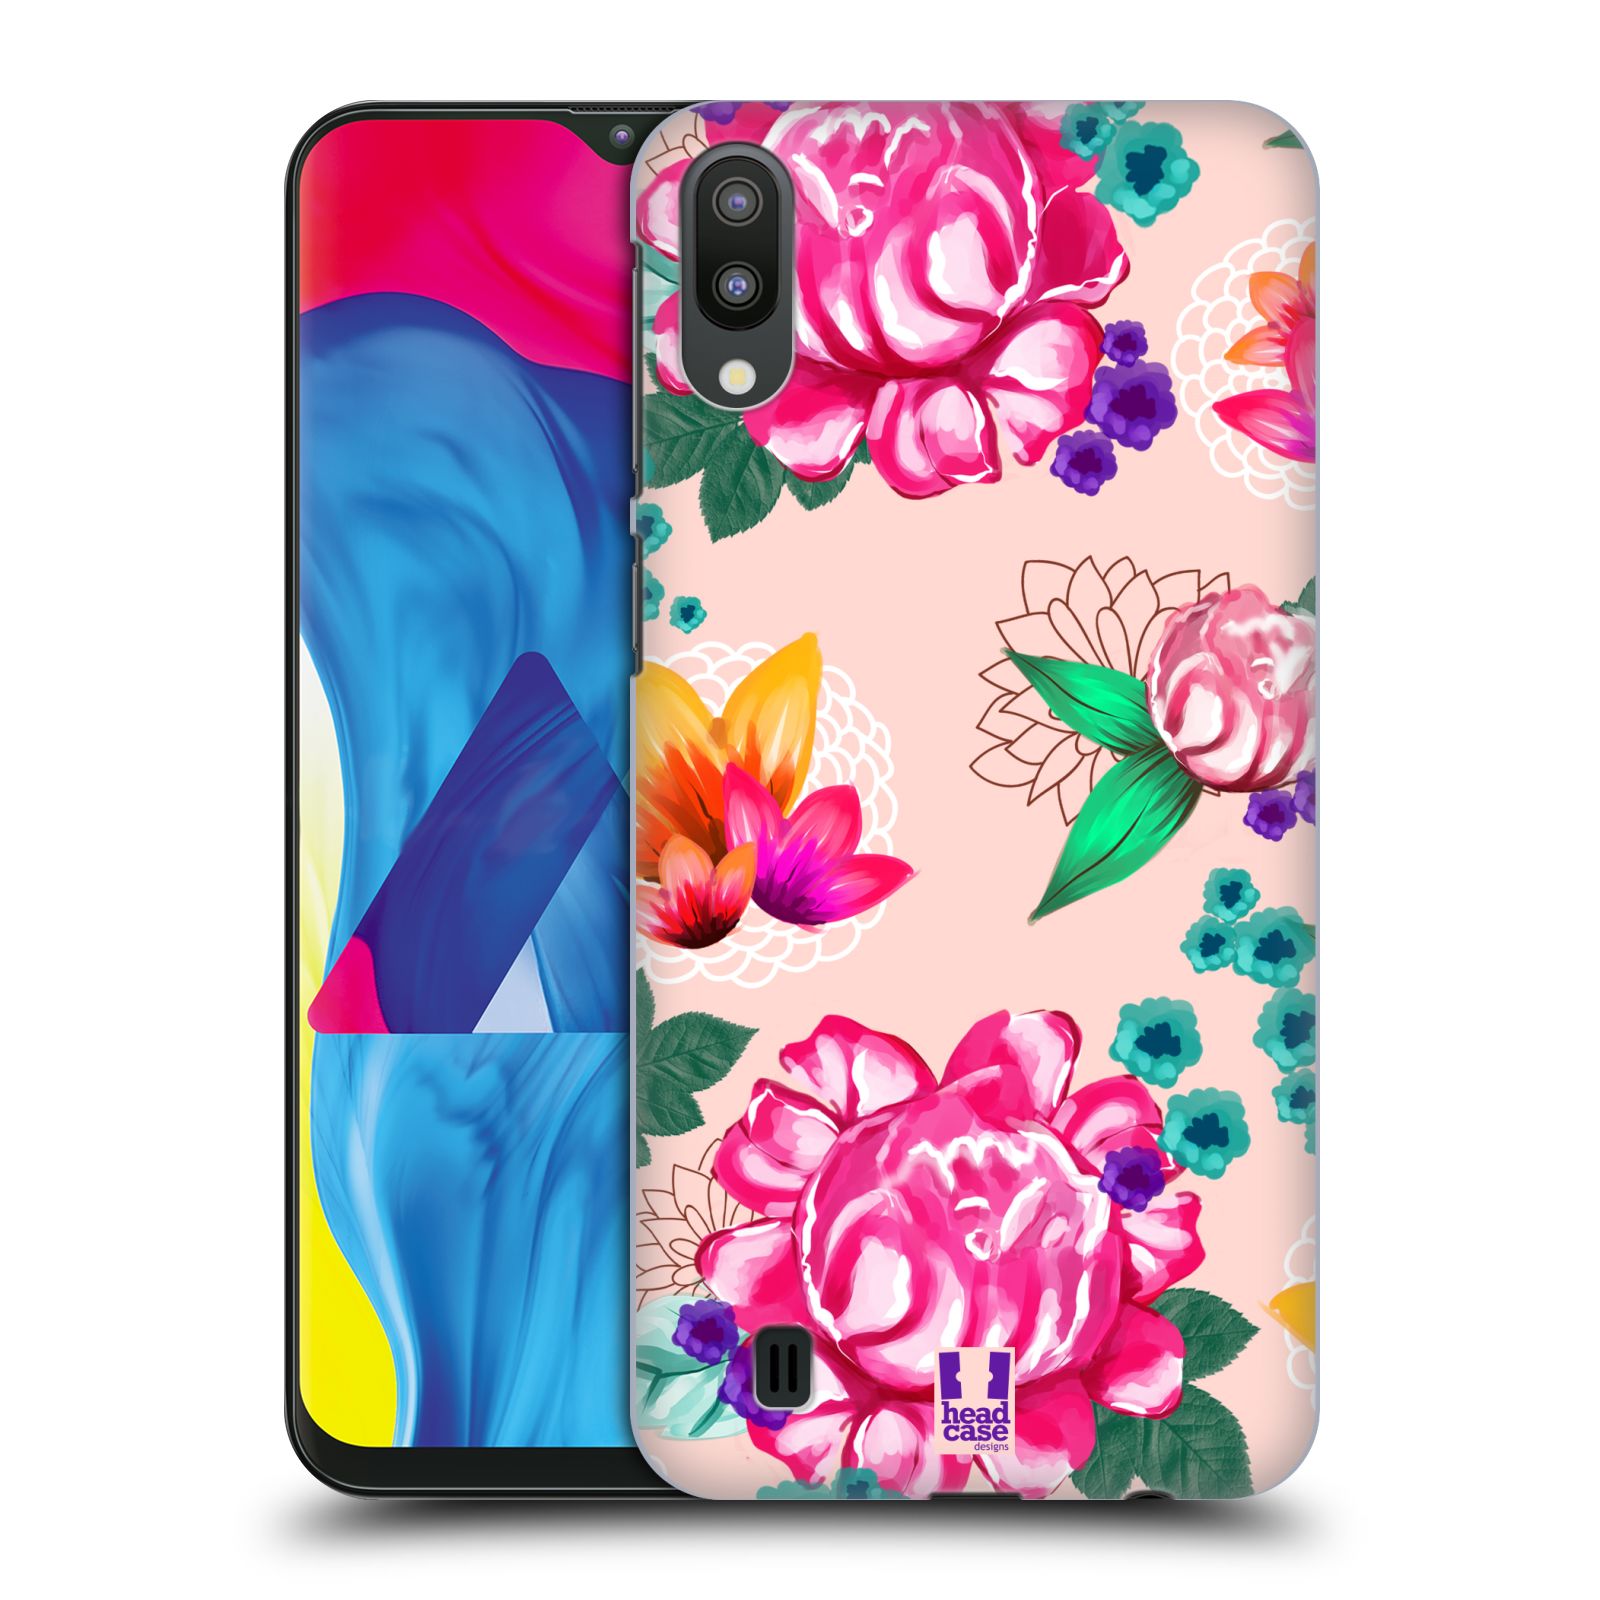 Plastový obal HEAD CASE na mobil Samsung Galaxy M10 vzor Malované květiny barevné SVĚTLE RŮŽOVÁ